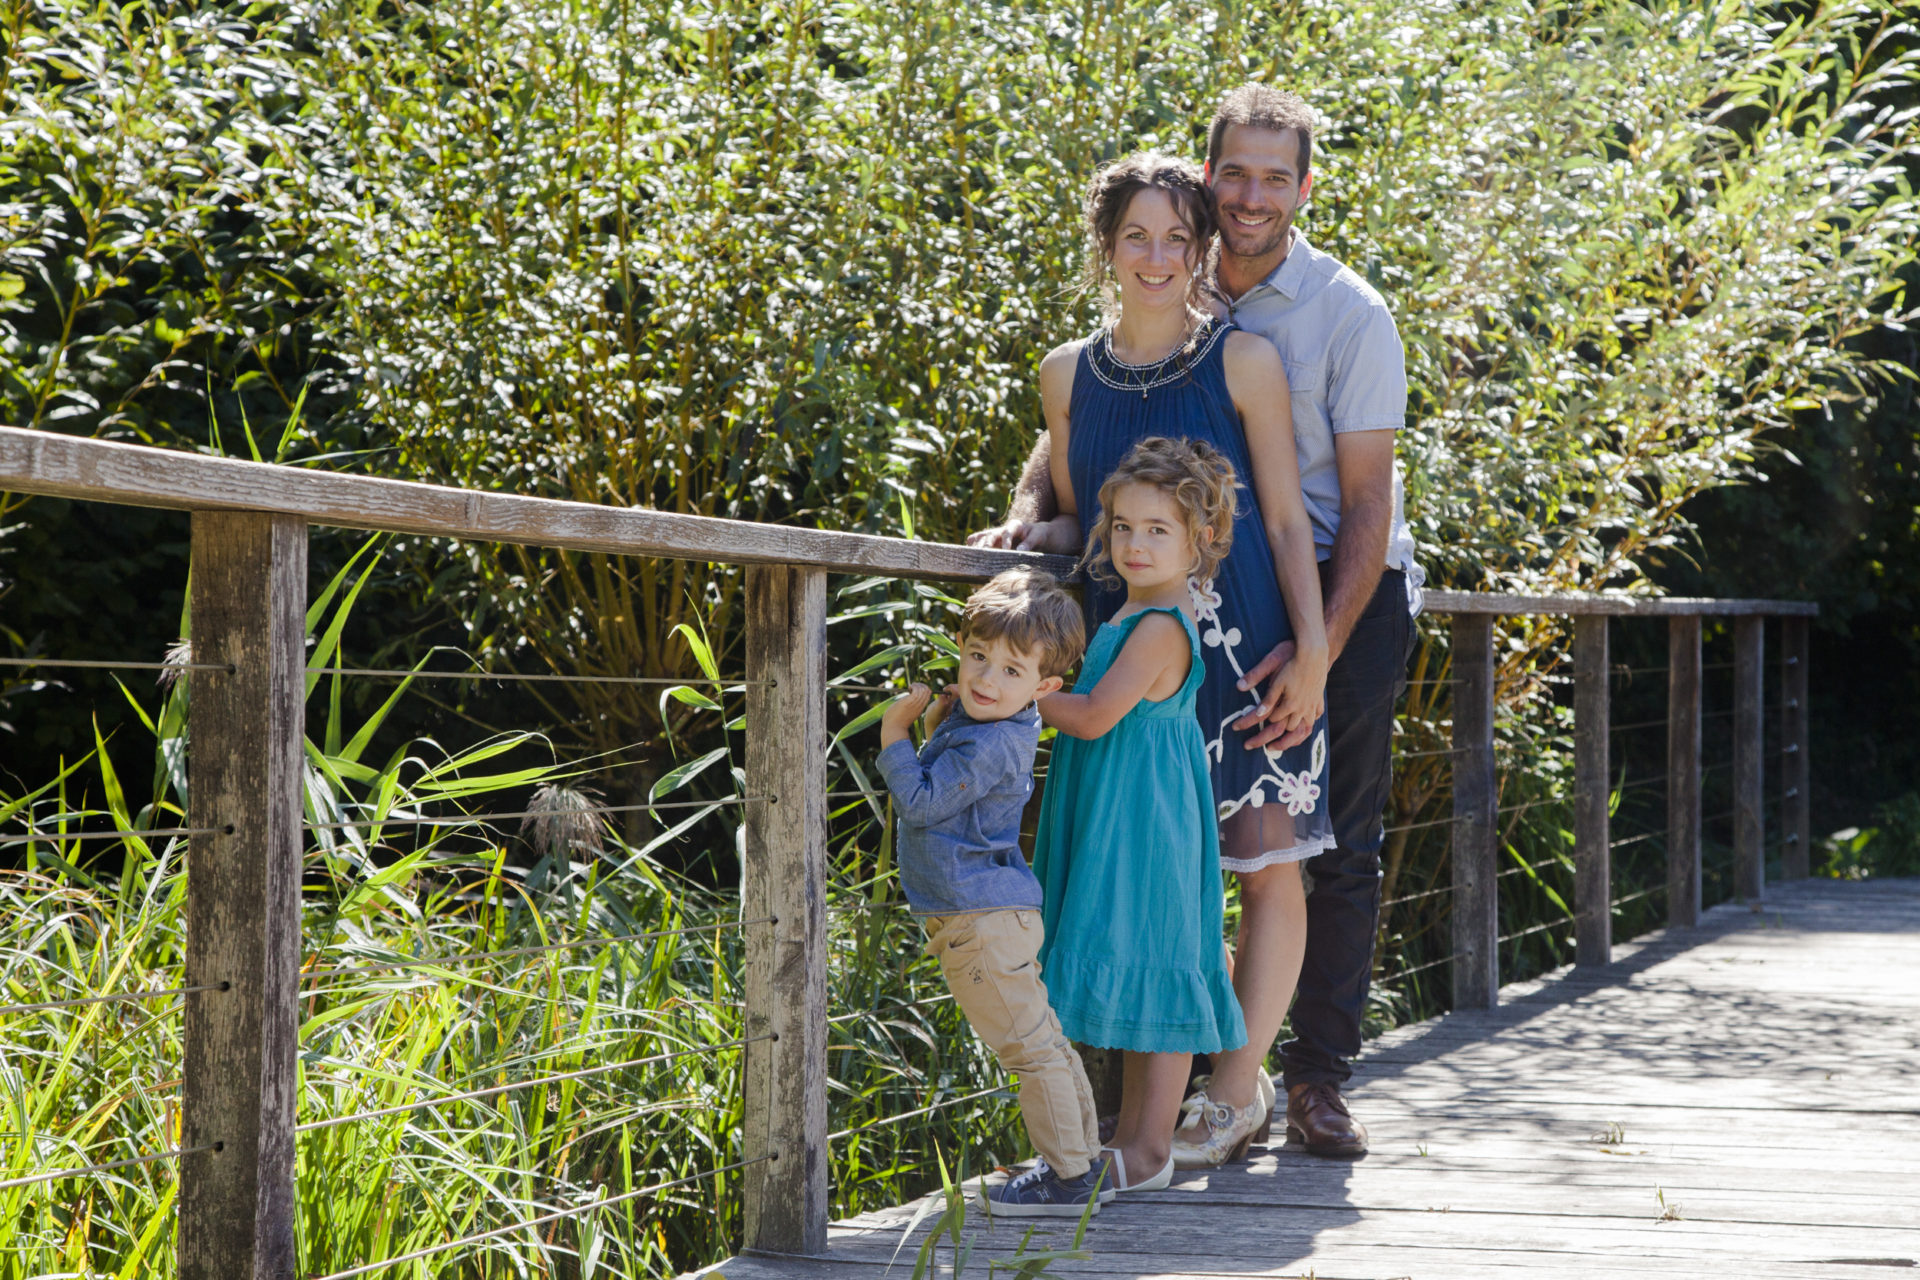 stephanie laisney photographe famille lifestyle nature sur un pont en foret lumière naturel angouleme charente